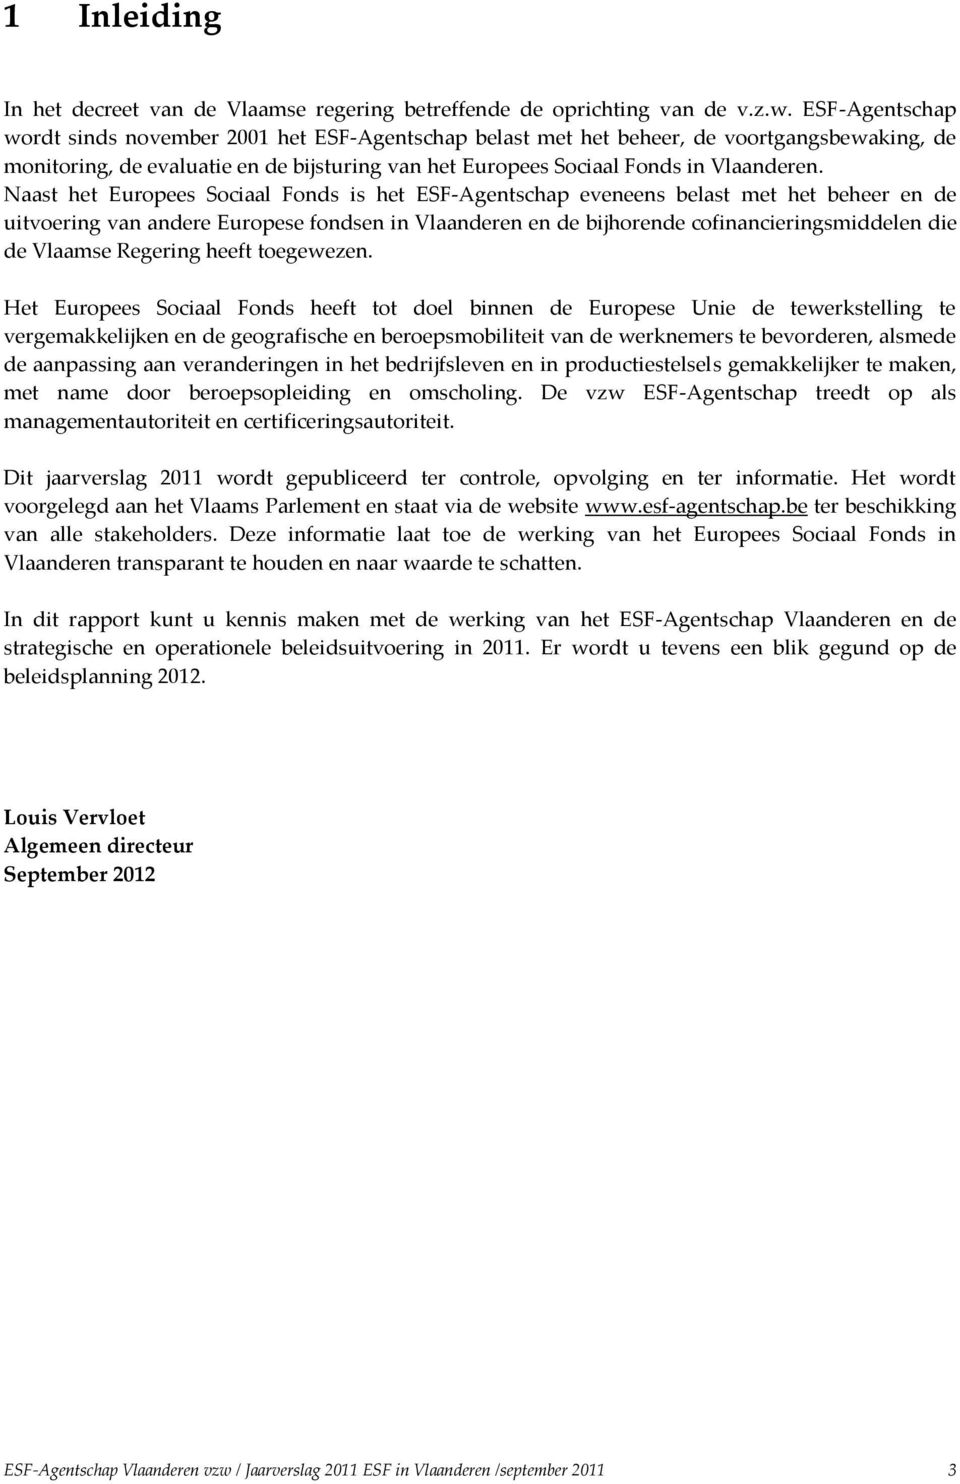 Naast het Europees Sociaal Fonds is het ESF-Agentschap eveneens belast met het beheer en de uitvoering van andere Europese fondsen in Vlaanderen en de bijhorende cofinancieringsmiddelen die de